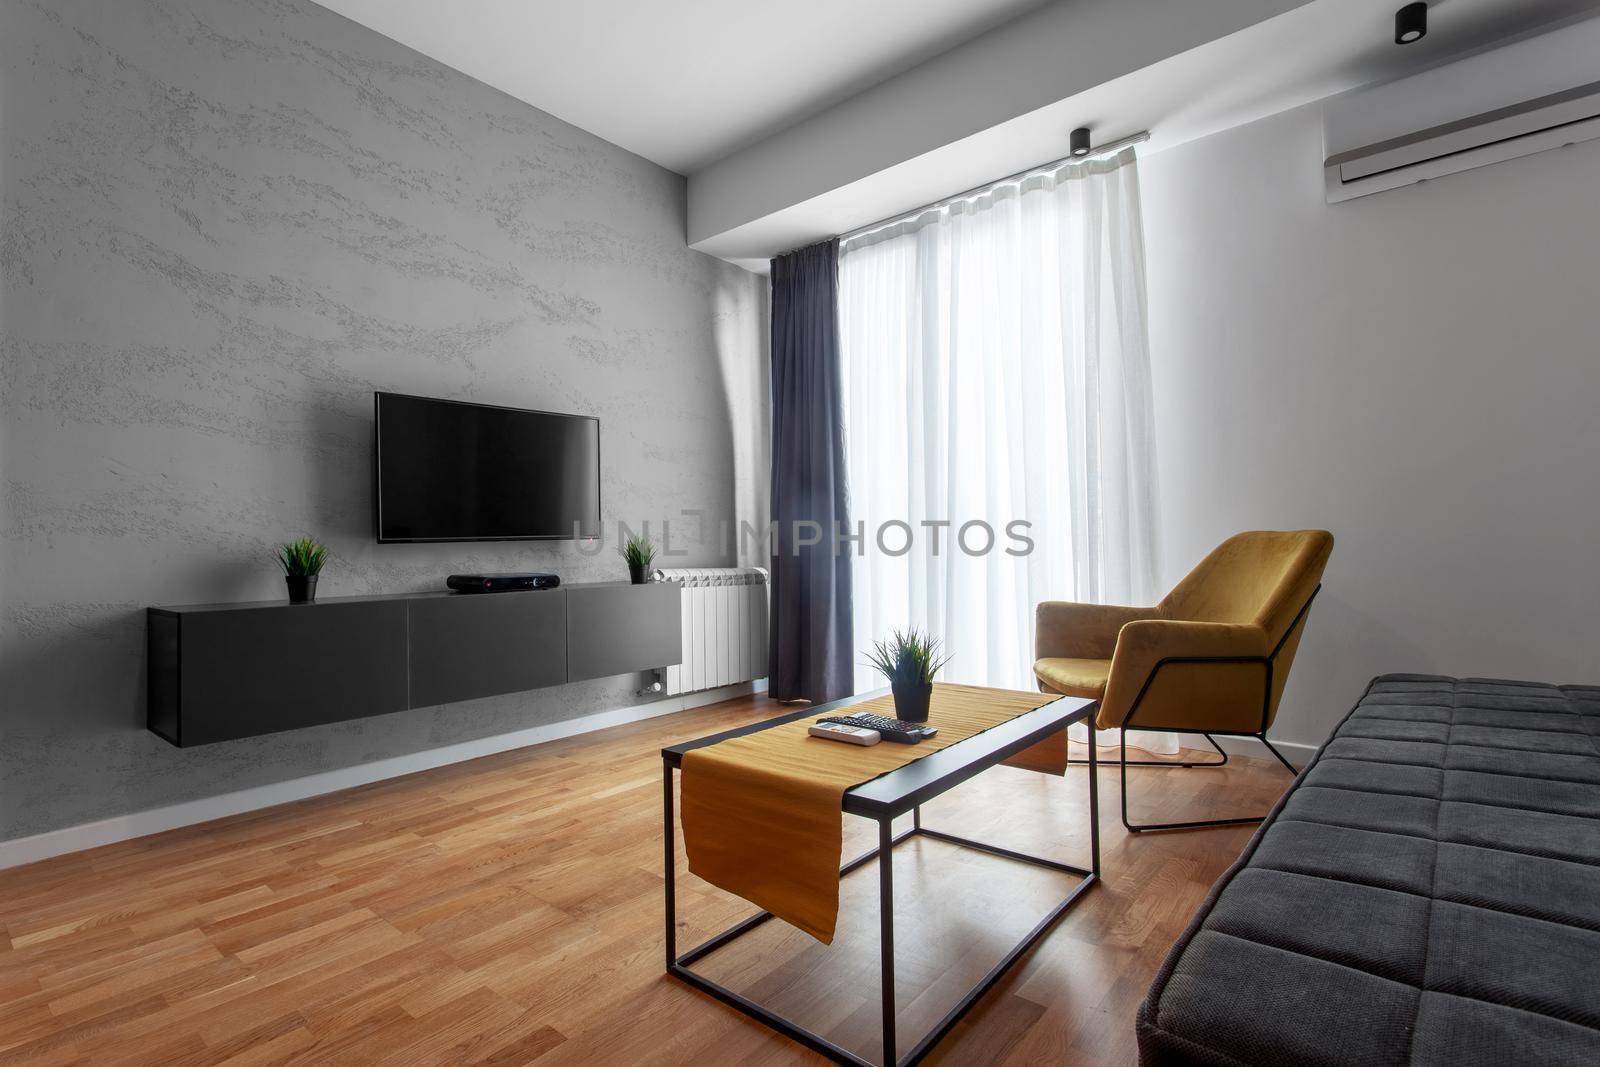 contemporary living room interior